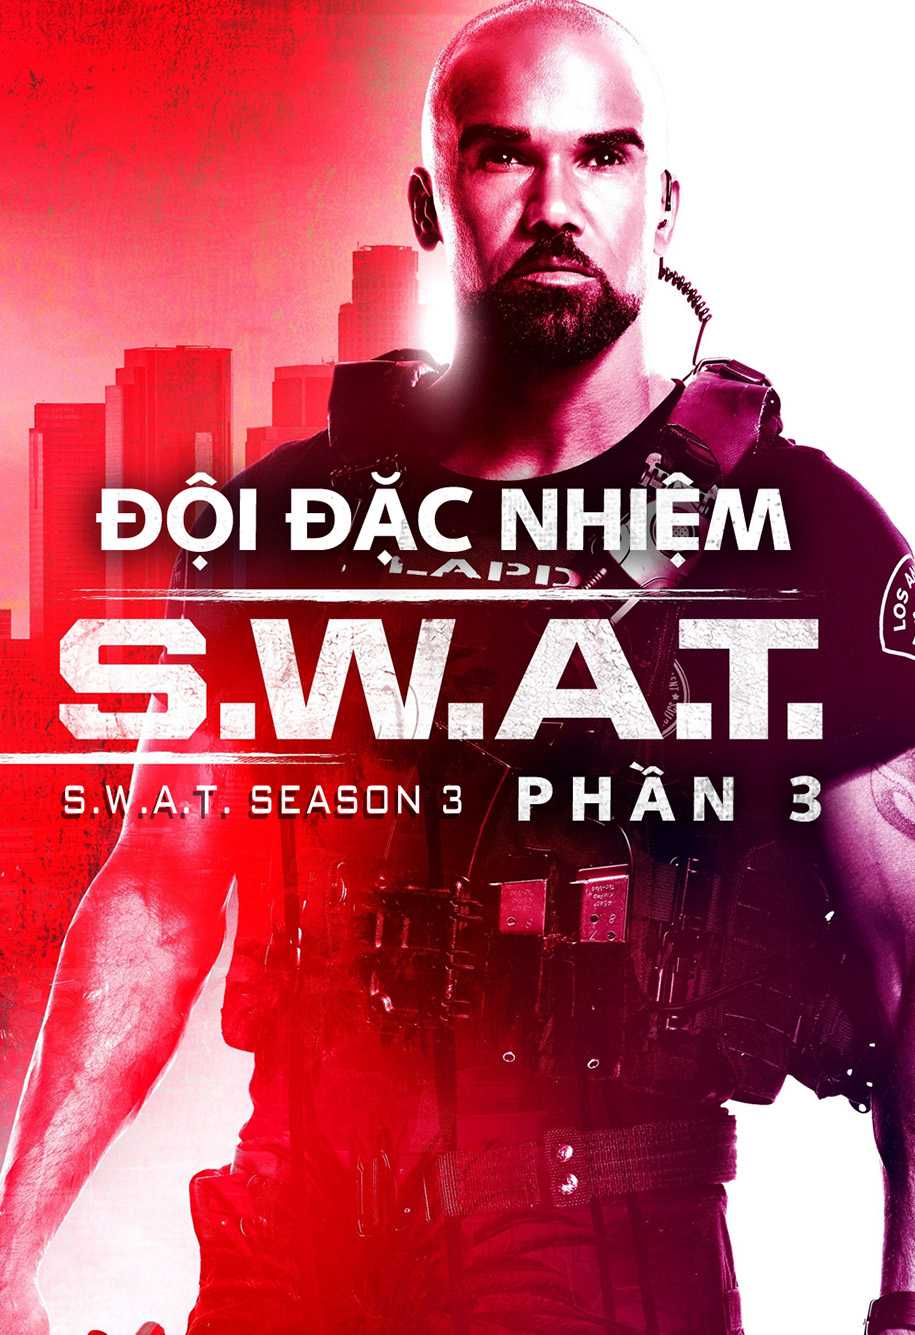 Đội đặc nhiệm swat (phần 3) - S.w.a.t. (season 3)